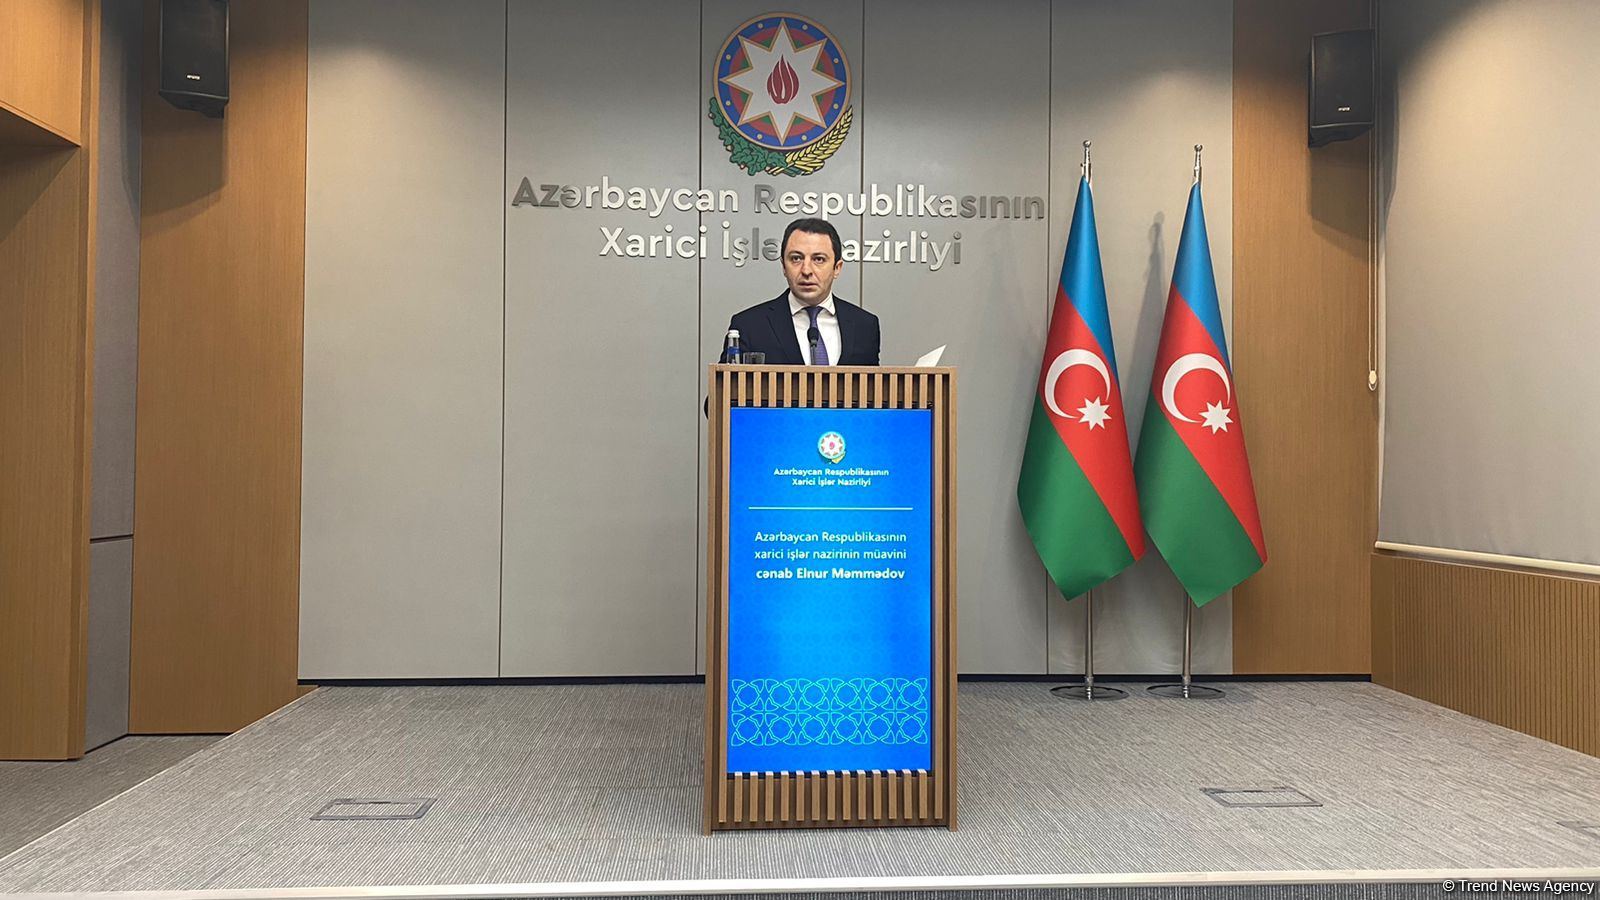 С сентября 2020 г. 75 азербайджанских дипломатов были отозваны для повышения квалификации - замминистра